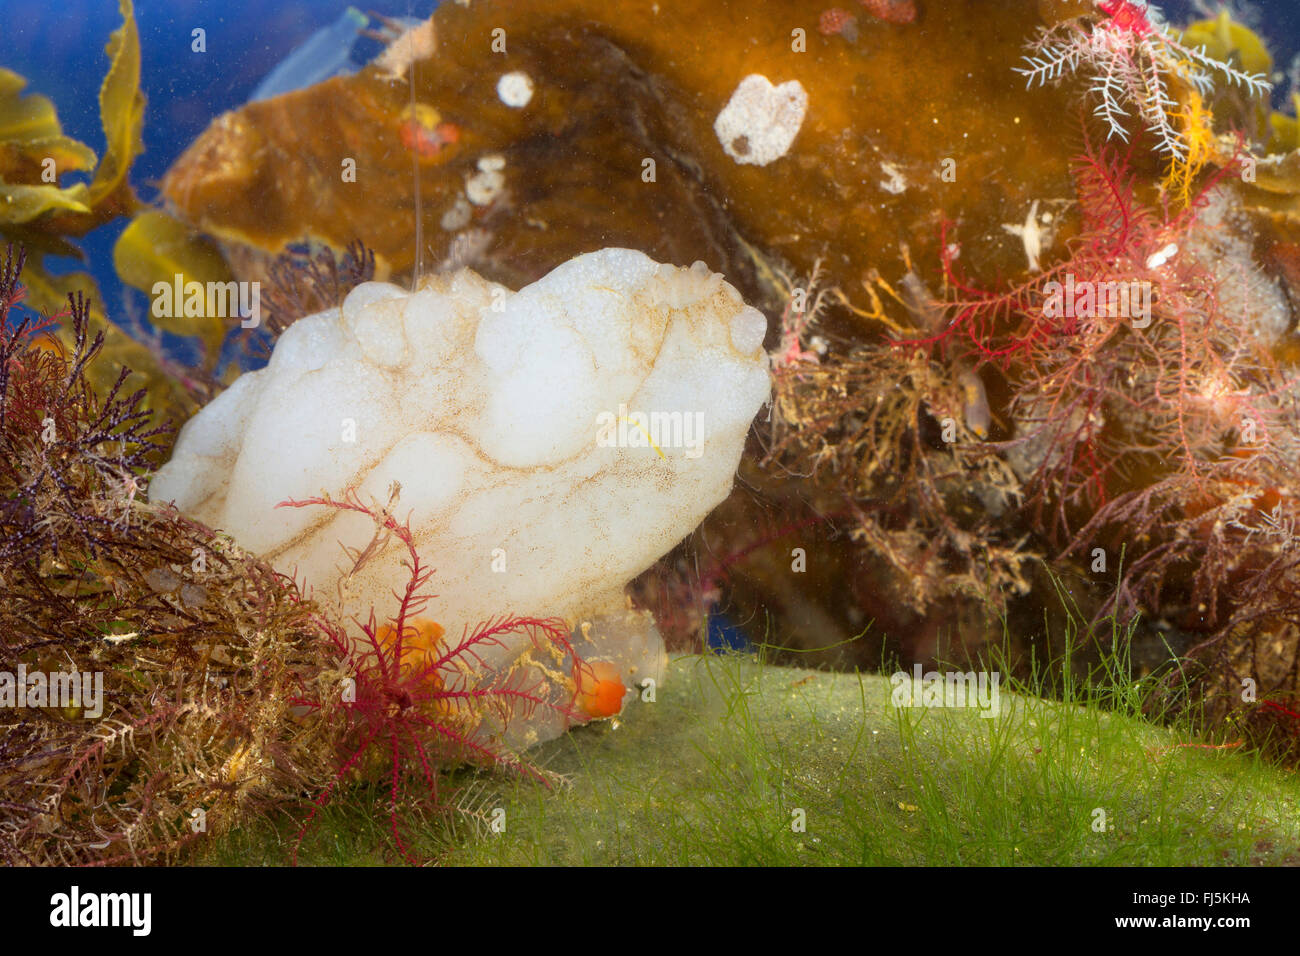 white sea-squirt, white sea squirt (Phallusia mammillata, Ascidia mammillata), on a stone on the ground Stock Photo